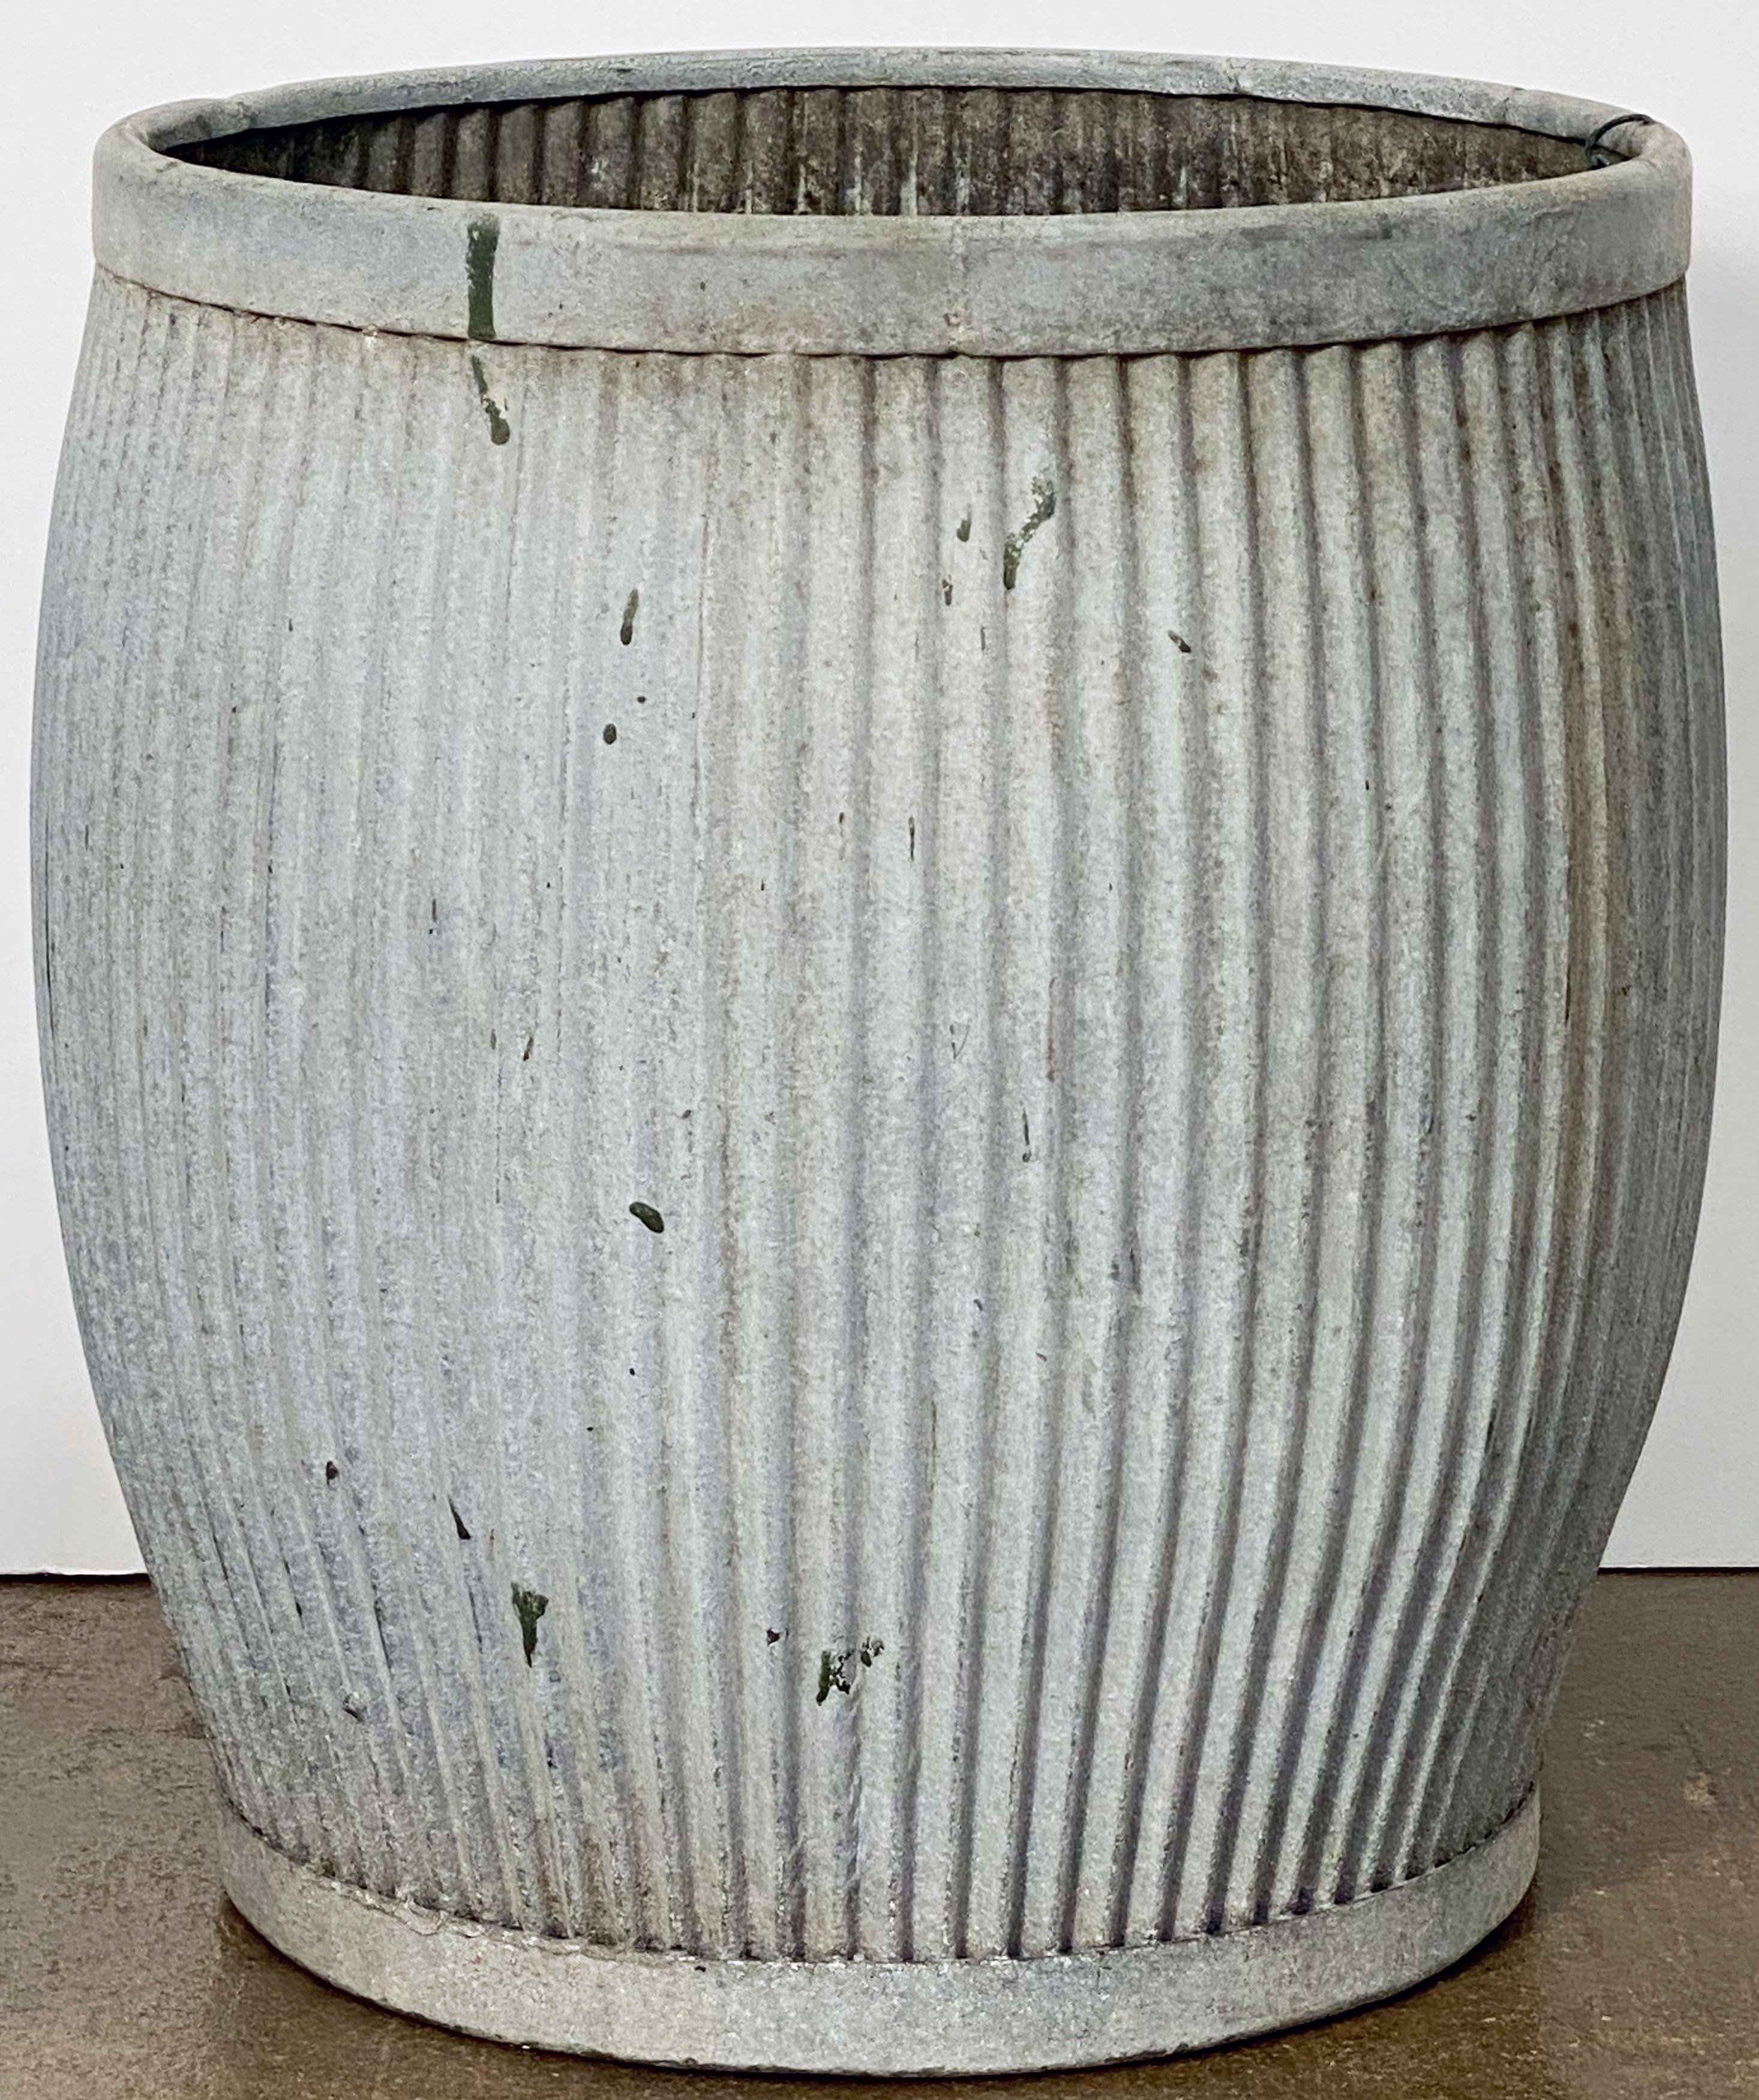 English Garden Pot or Dolly Tub Planter of Zinc 9